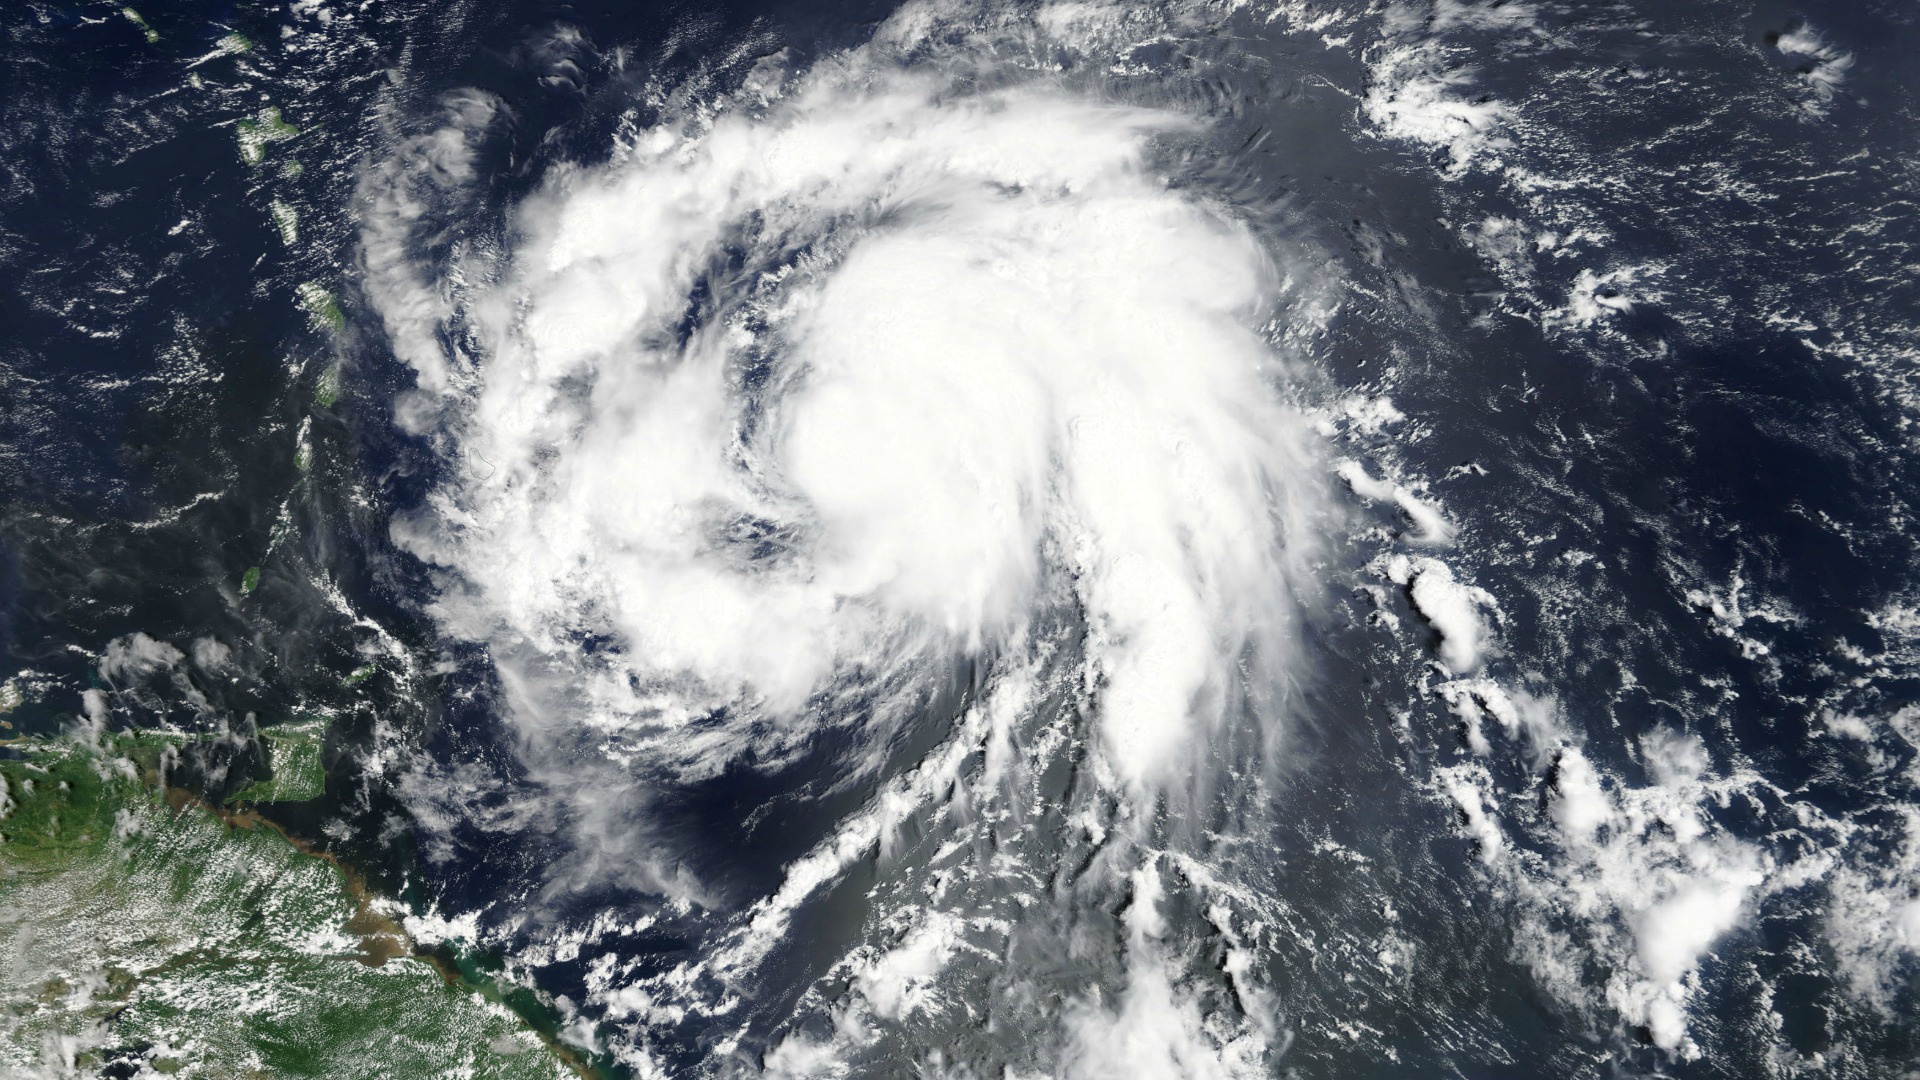 El huracán María causa una “devastación generalizada” a su paso por Dominica